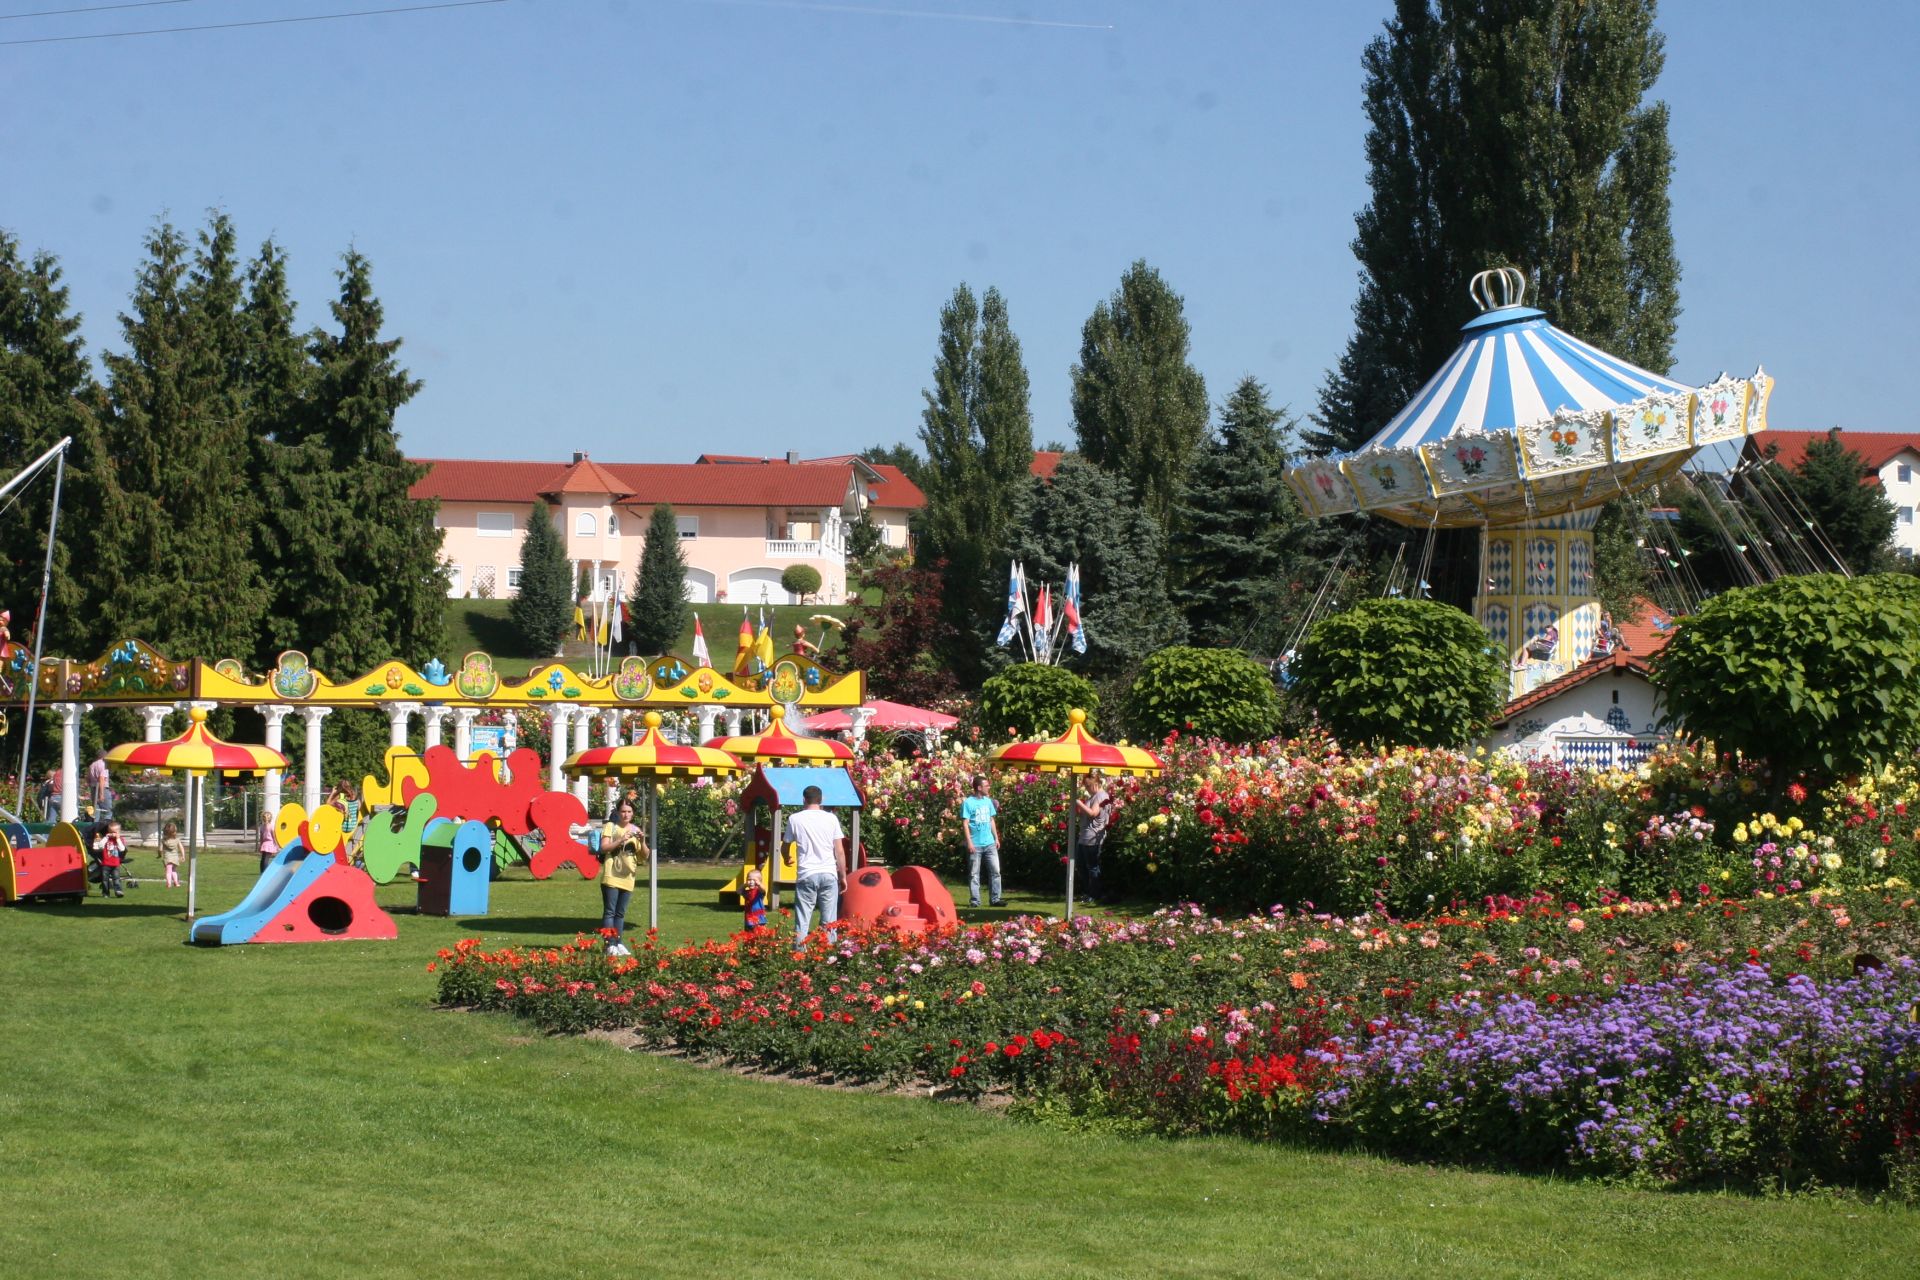 Churpfalzpark - Blumenbeete und Karusell